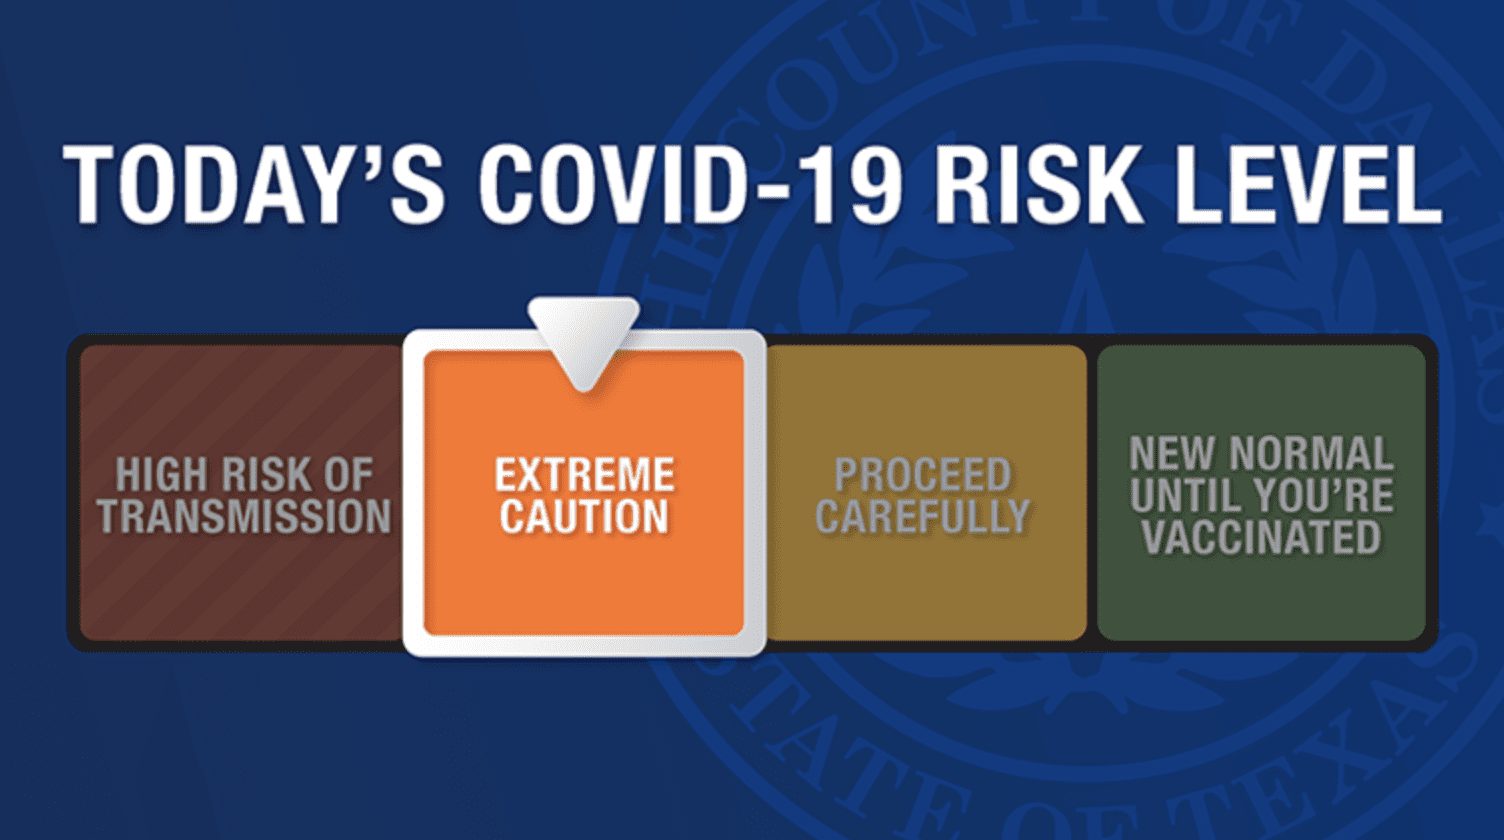 Dallas County Raises COVID 'Risk Level' to Orange